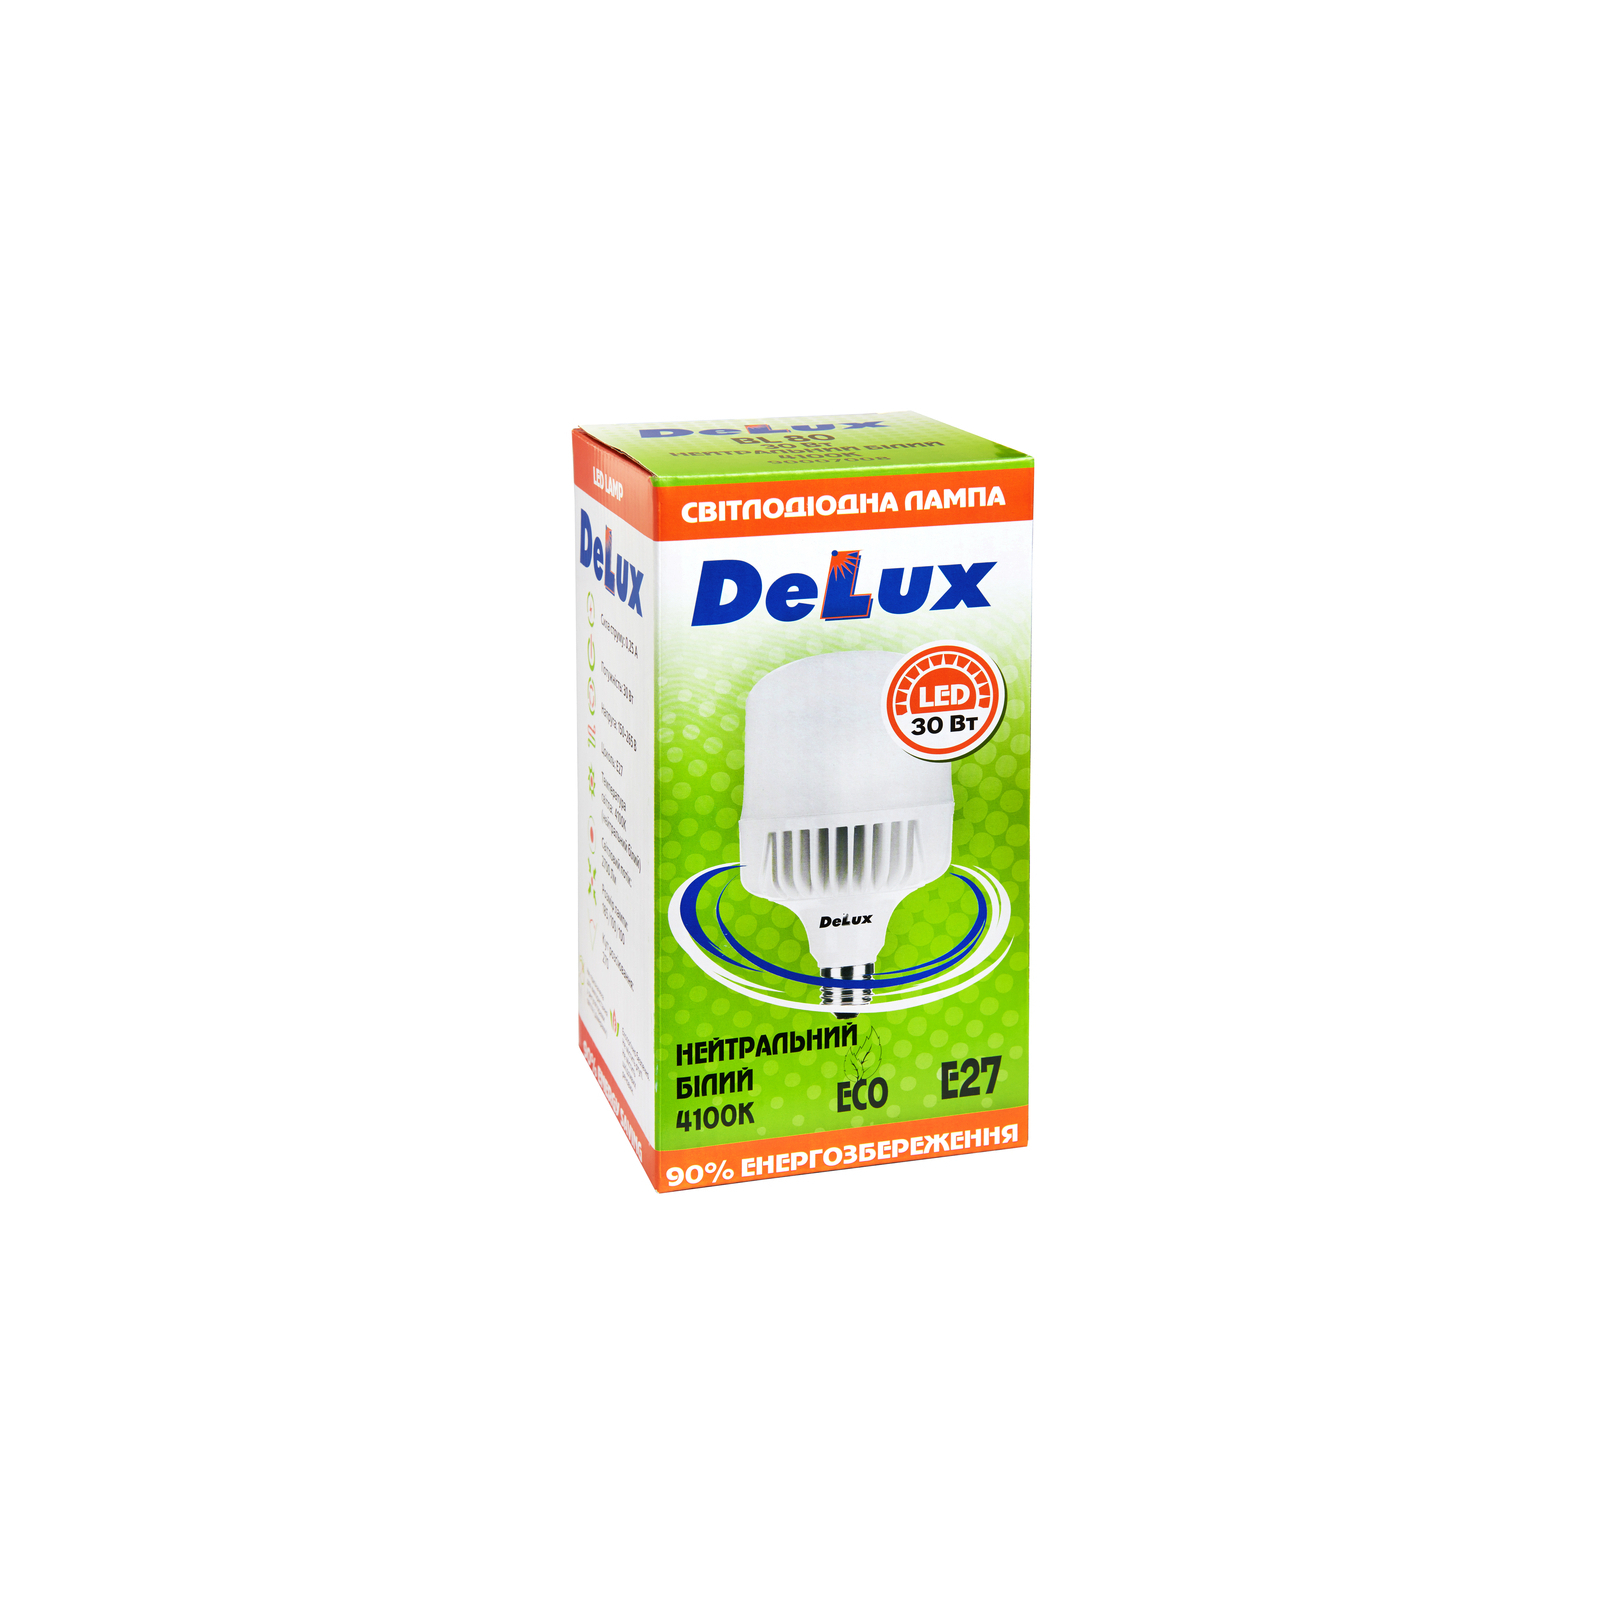 Лампочка Delux BL 80 30w 4000K (90020575) зображення 2